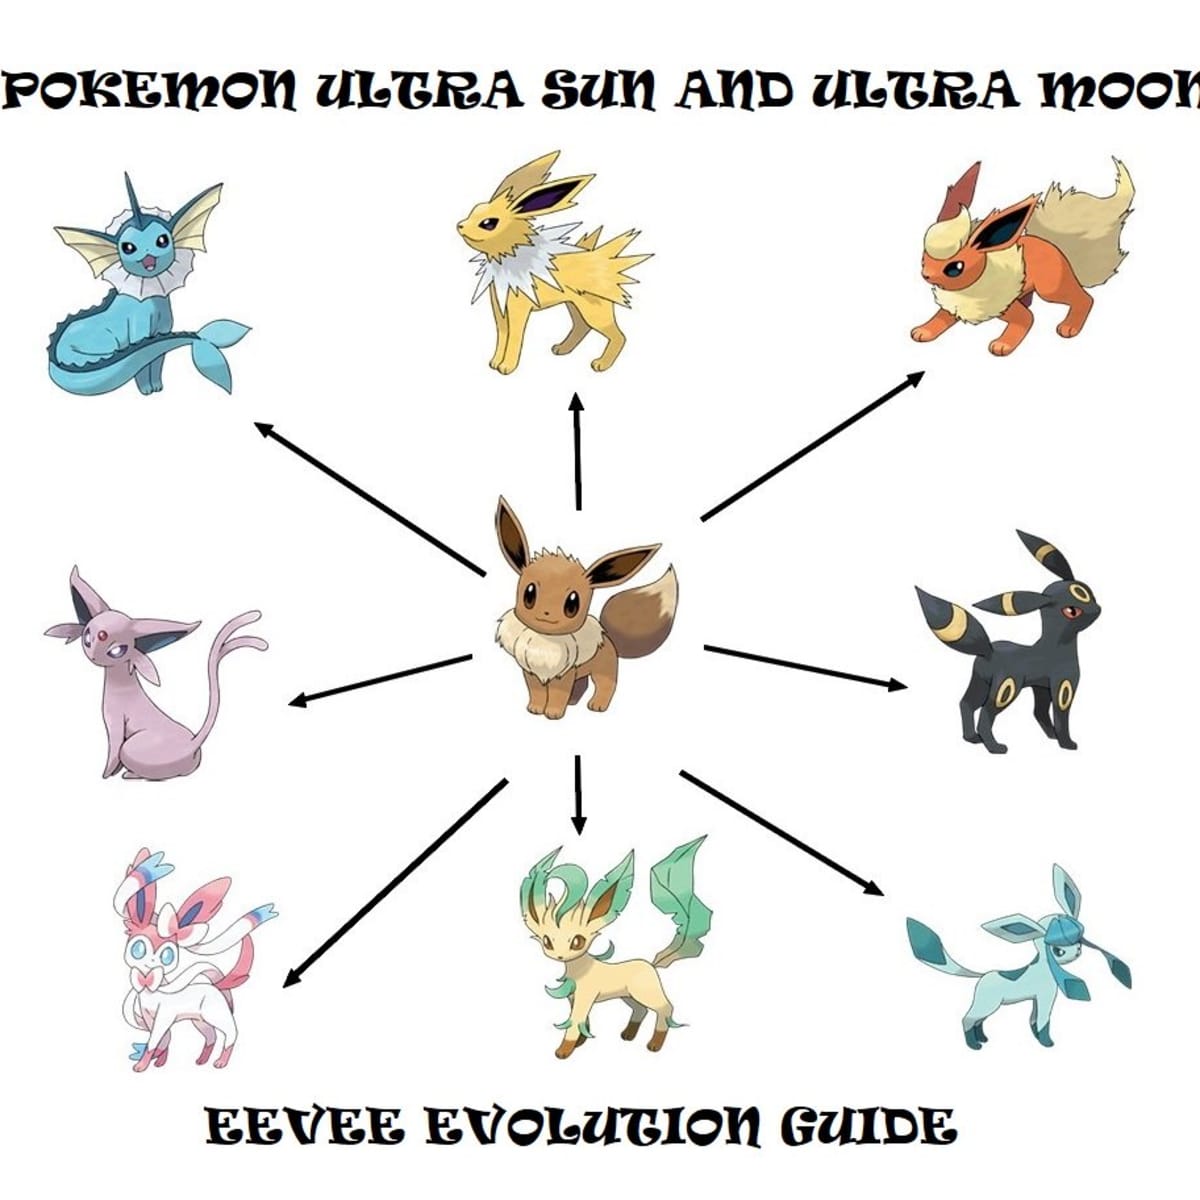 How To Get All Eeveelutions In Pokemon Legends: Arceus